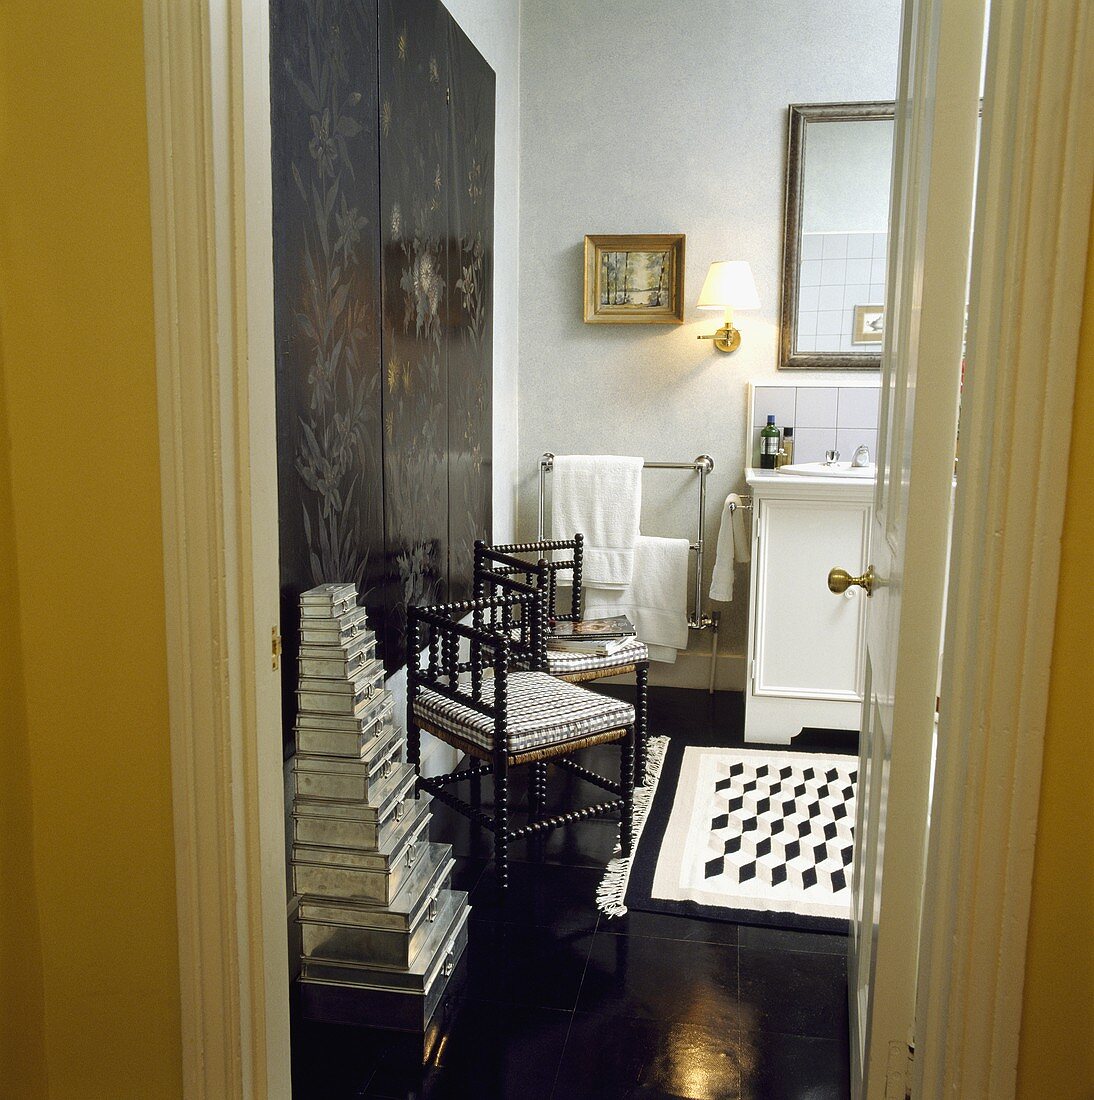 Blick in ein schwarz-weisses Badezimmer mit gestapelten Aluminiumdosen neben einem antiken Stuhl